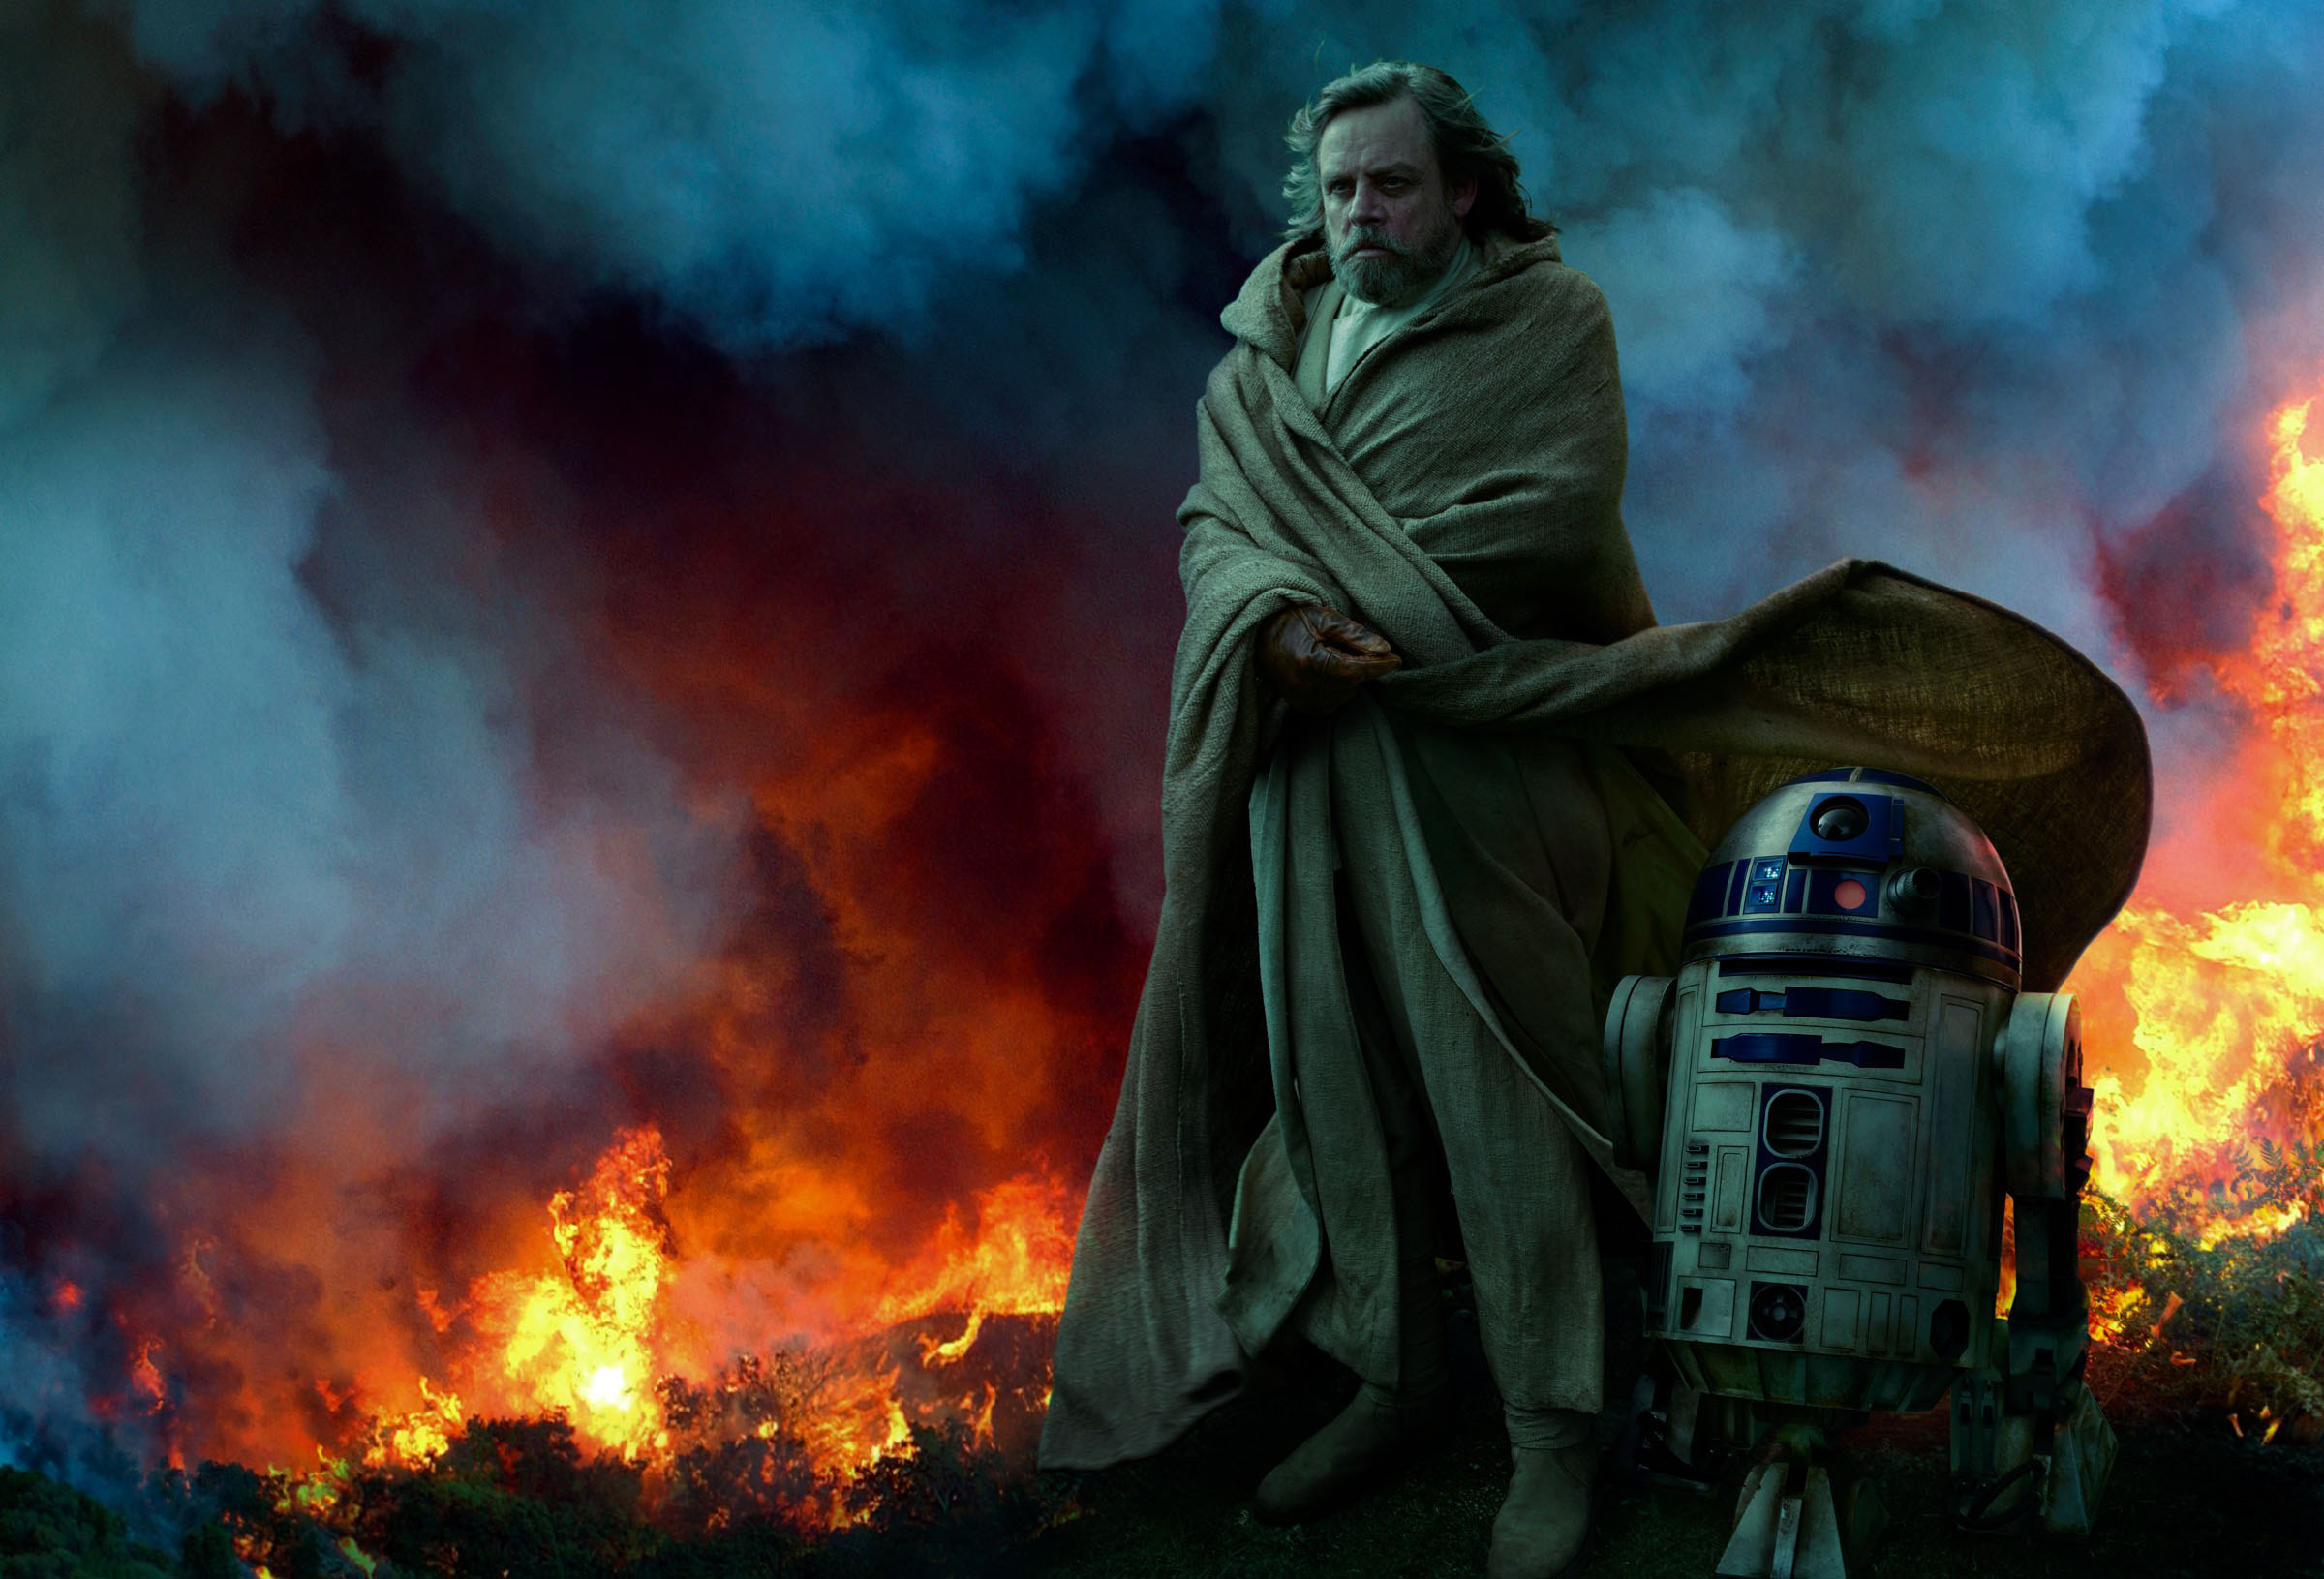 Luke Skywalker (Star Wars), Luke Skywalker wallpaper, HD background image, 2400x1640 HD Desktop